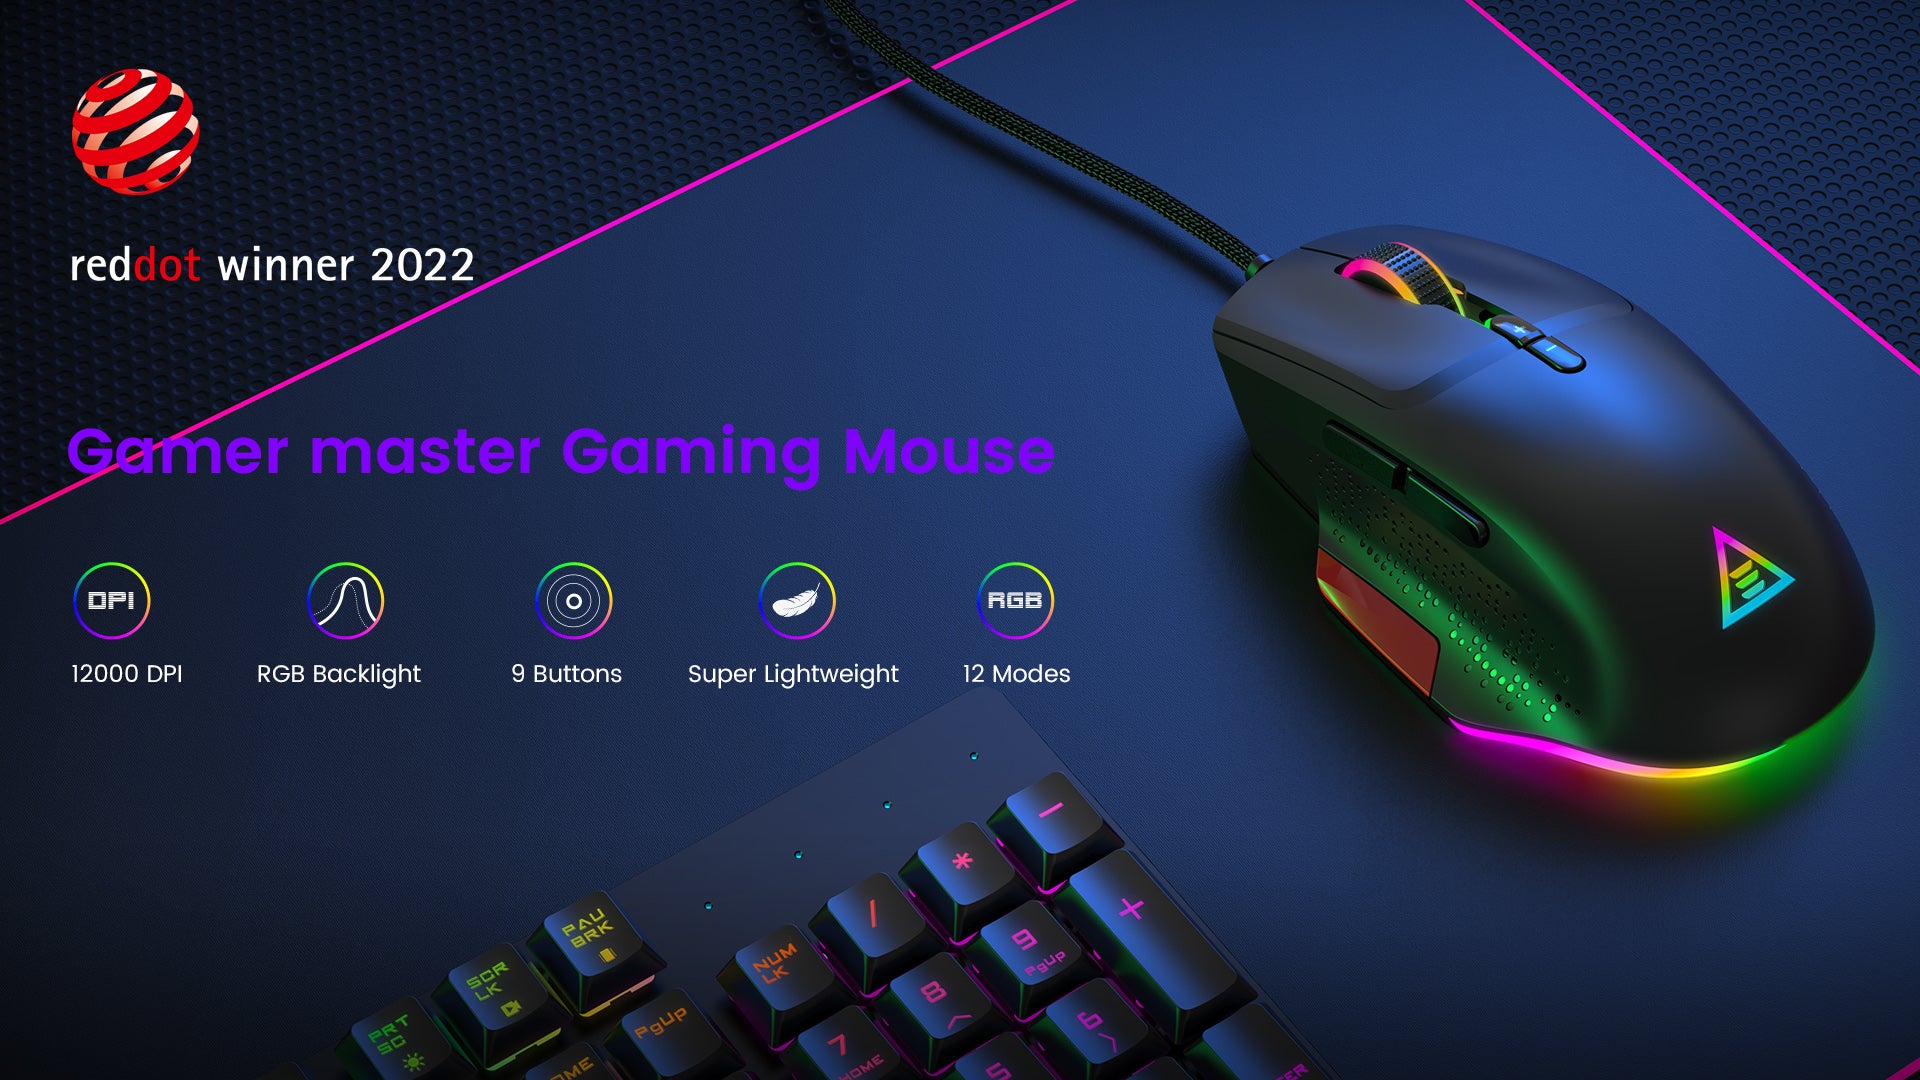 reddot winner EM600 gaming mouse